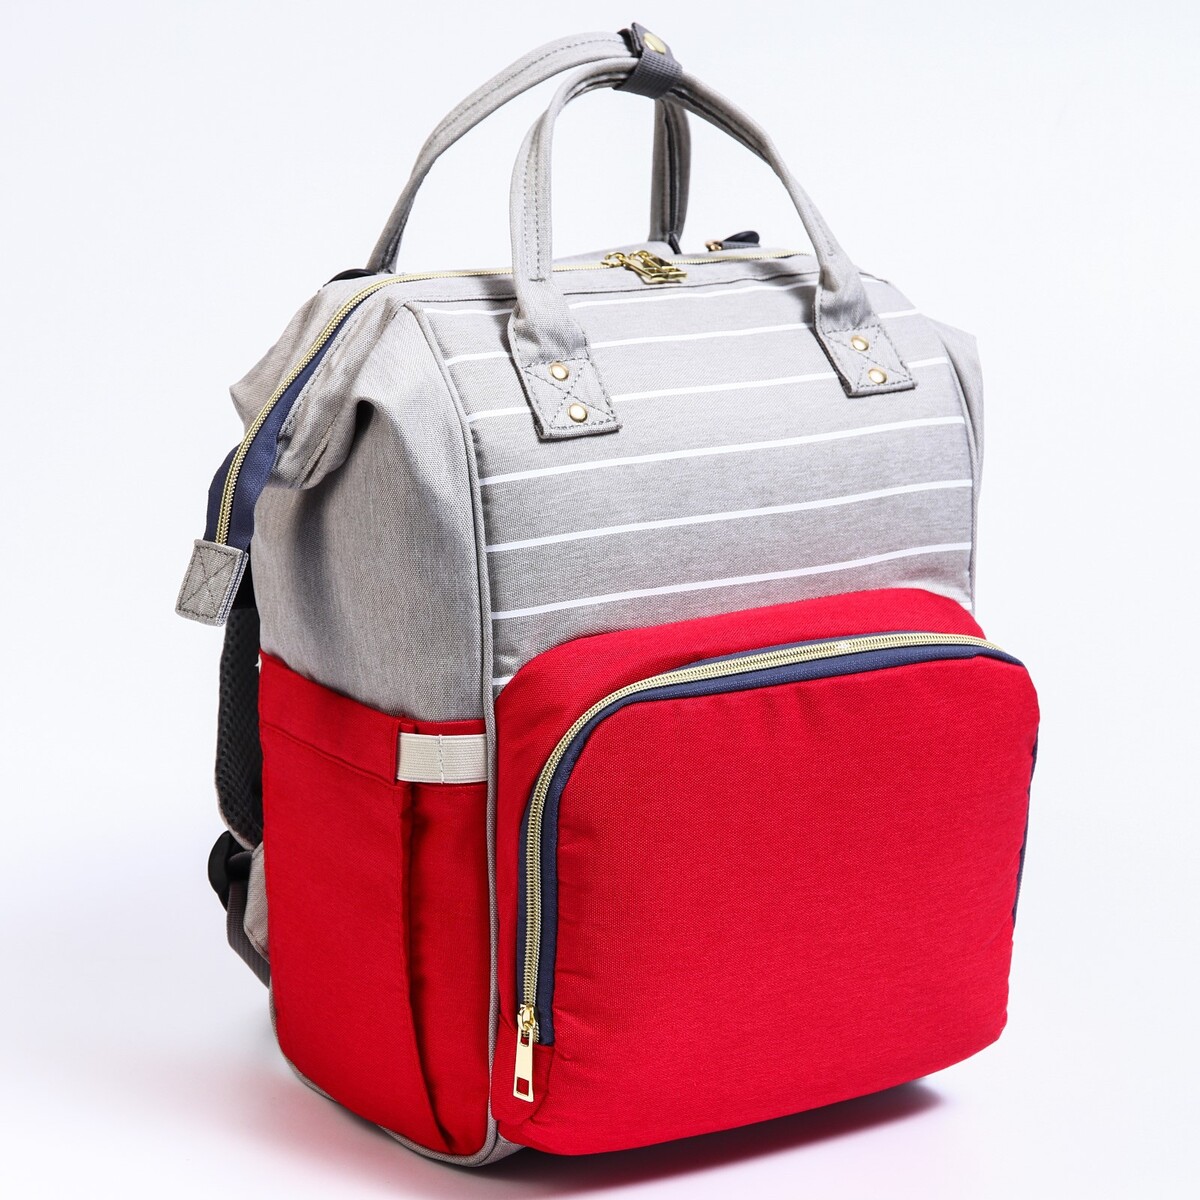 Рюкзак женский с термокарманом, термосумка - портфель, цвет серый/красный рюкзак kingkong i 10 wb 9062 черн средний фоторюкзак